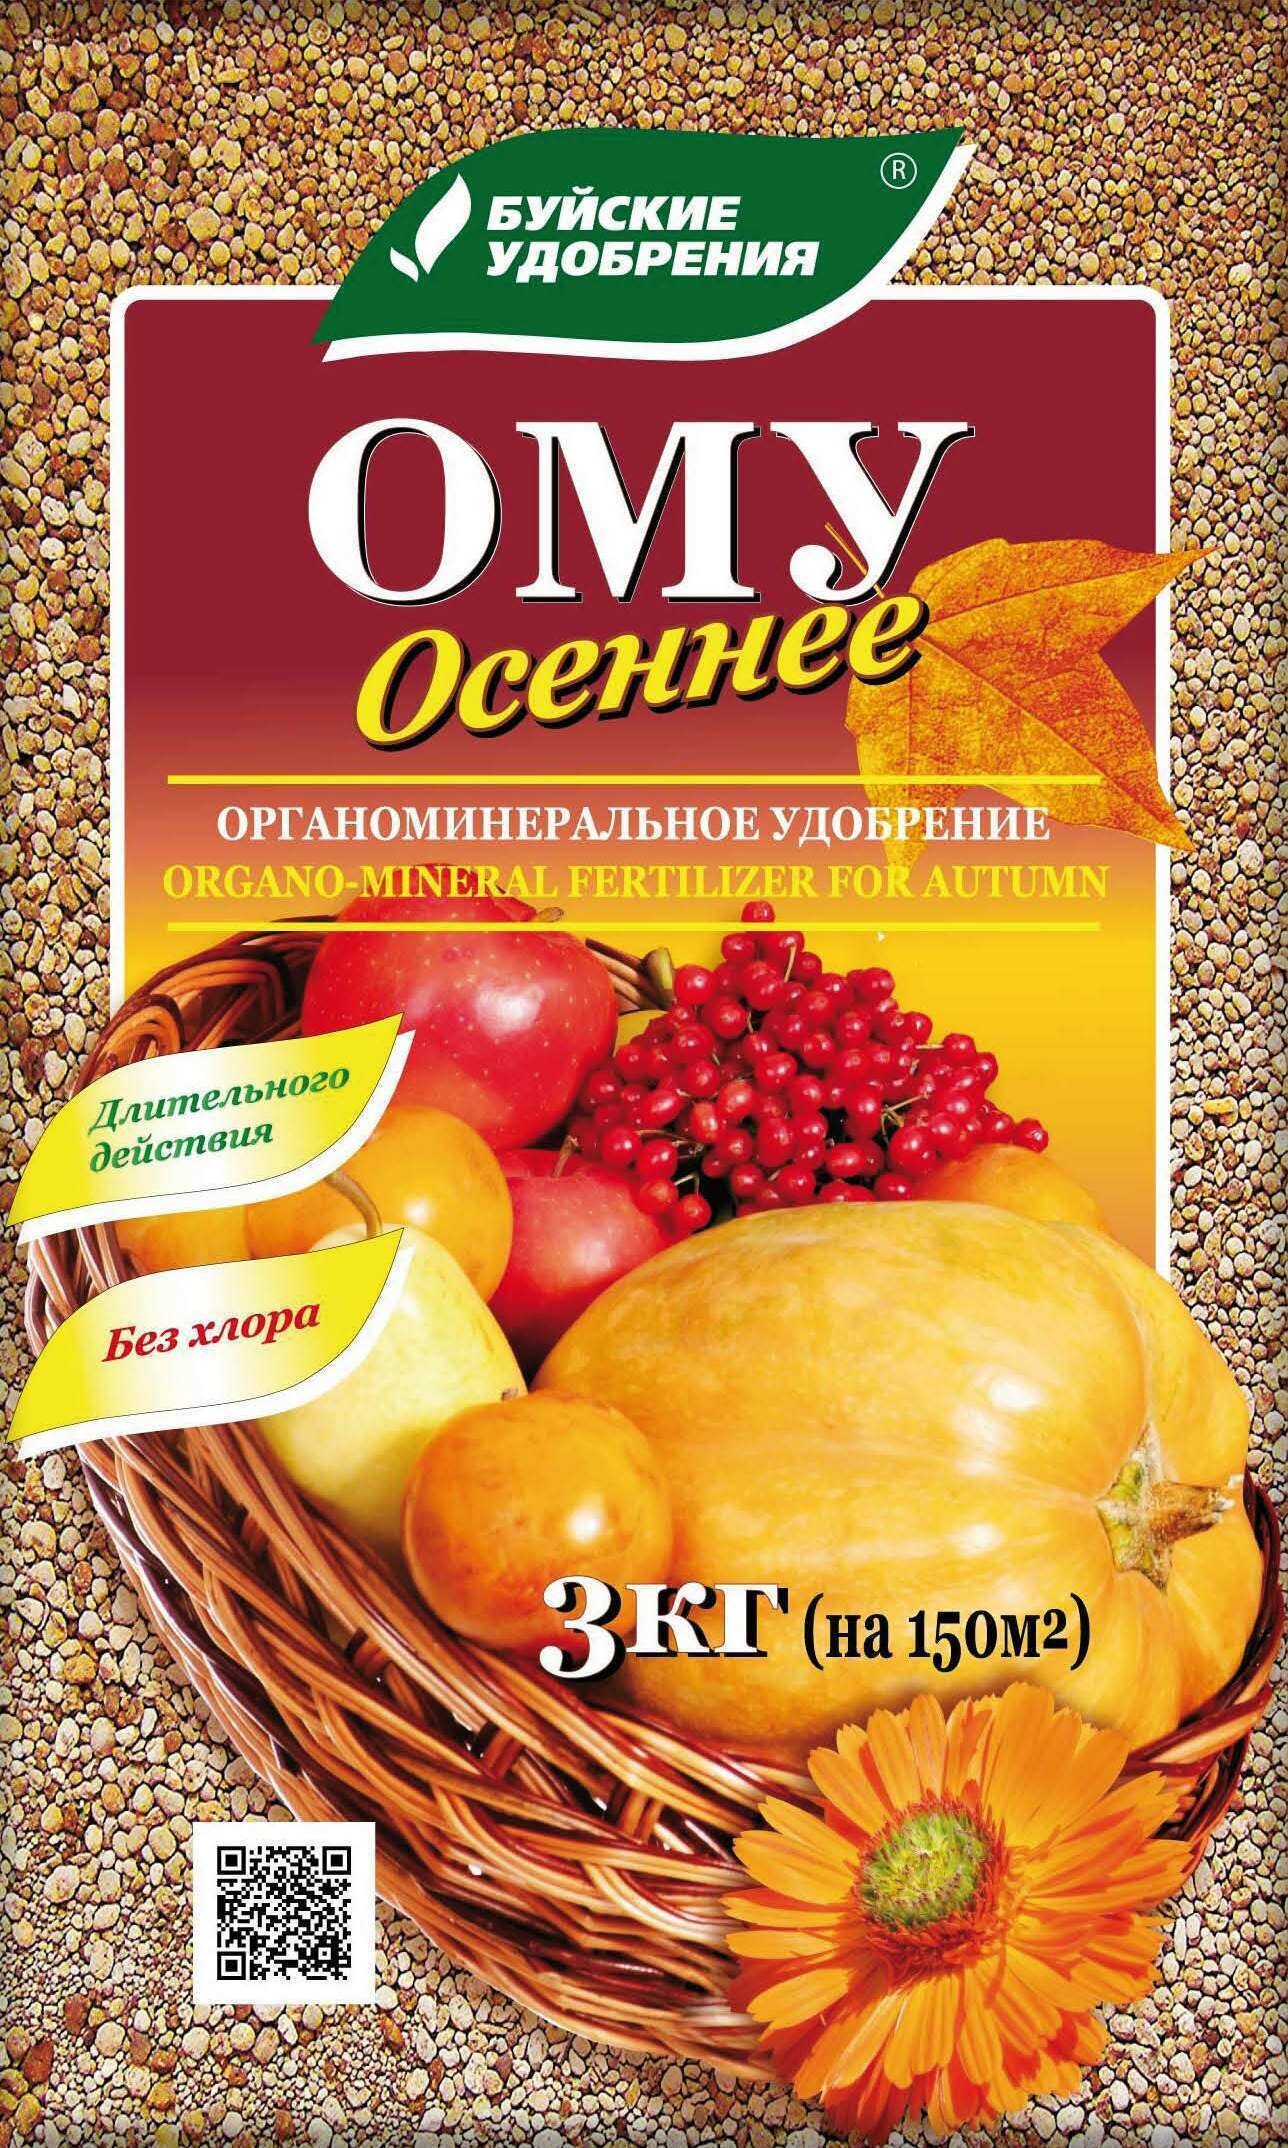 Комплексное гранулированное органоминеральное удобрение "Осеннее" 3 кг